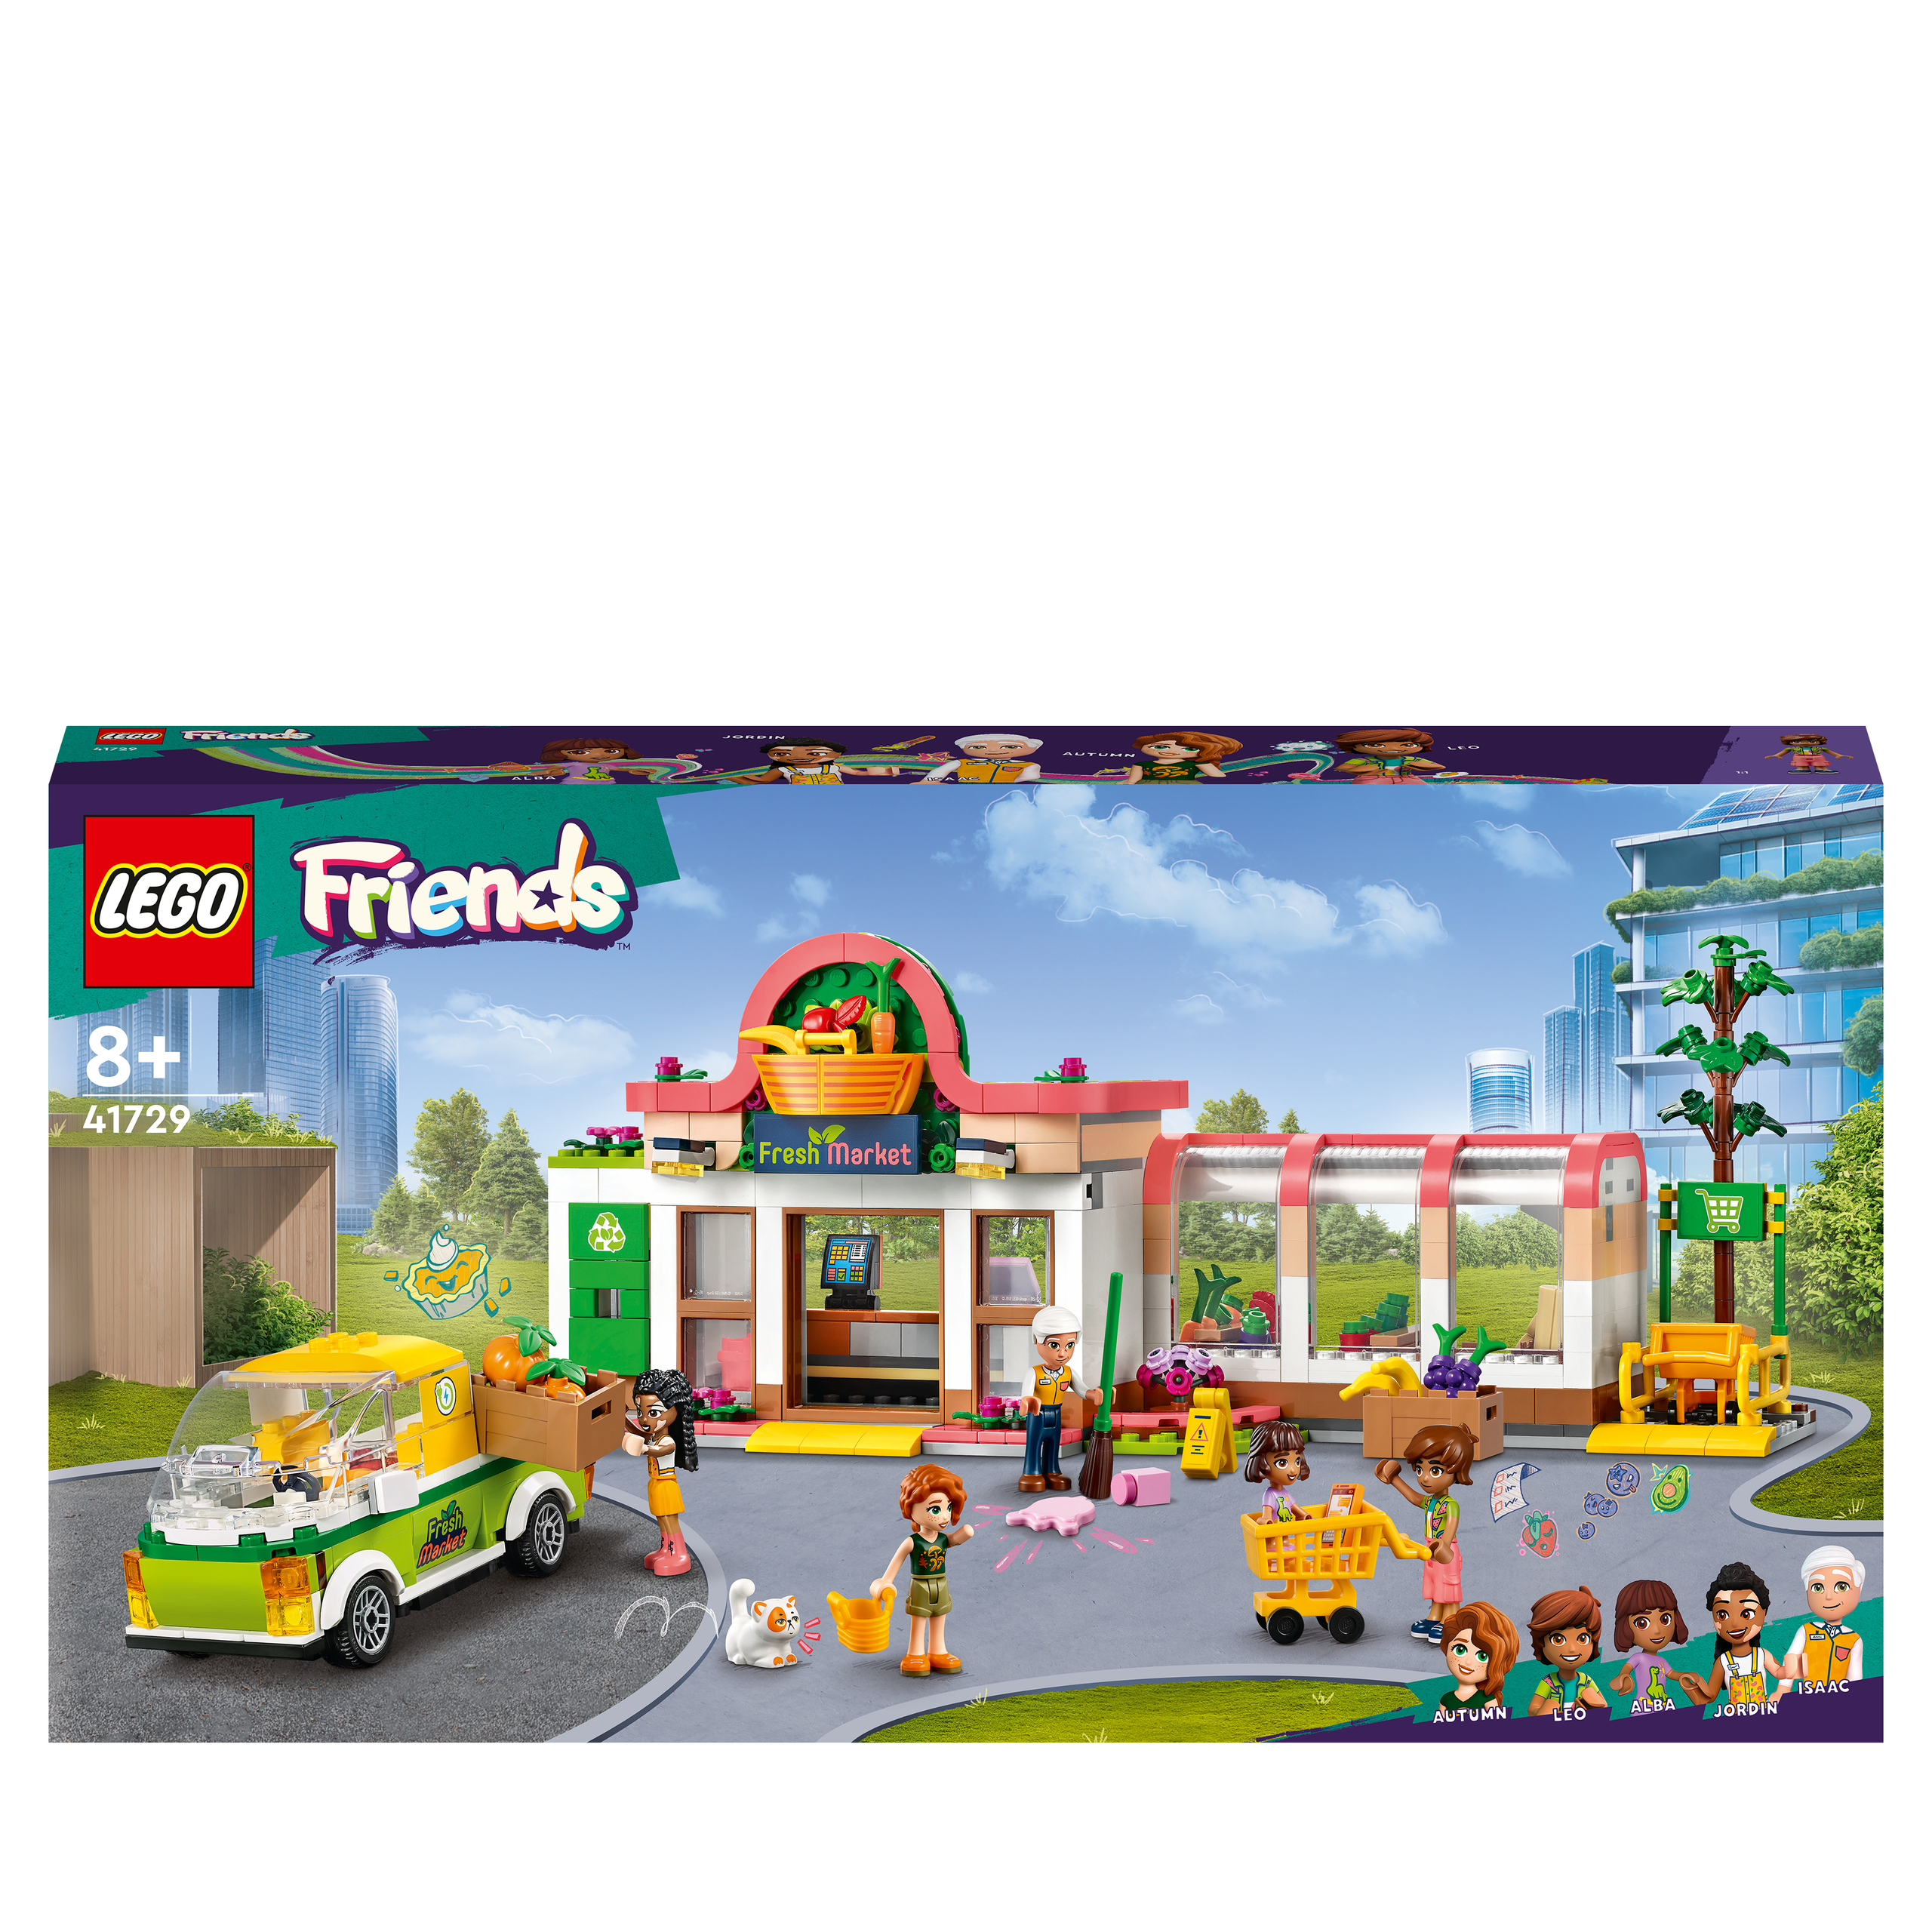 Lego Friends 4179 L'epicerie Biologique - 41729